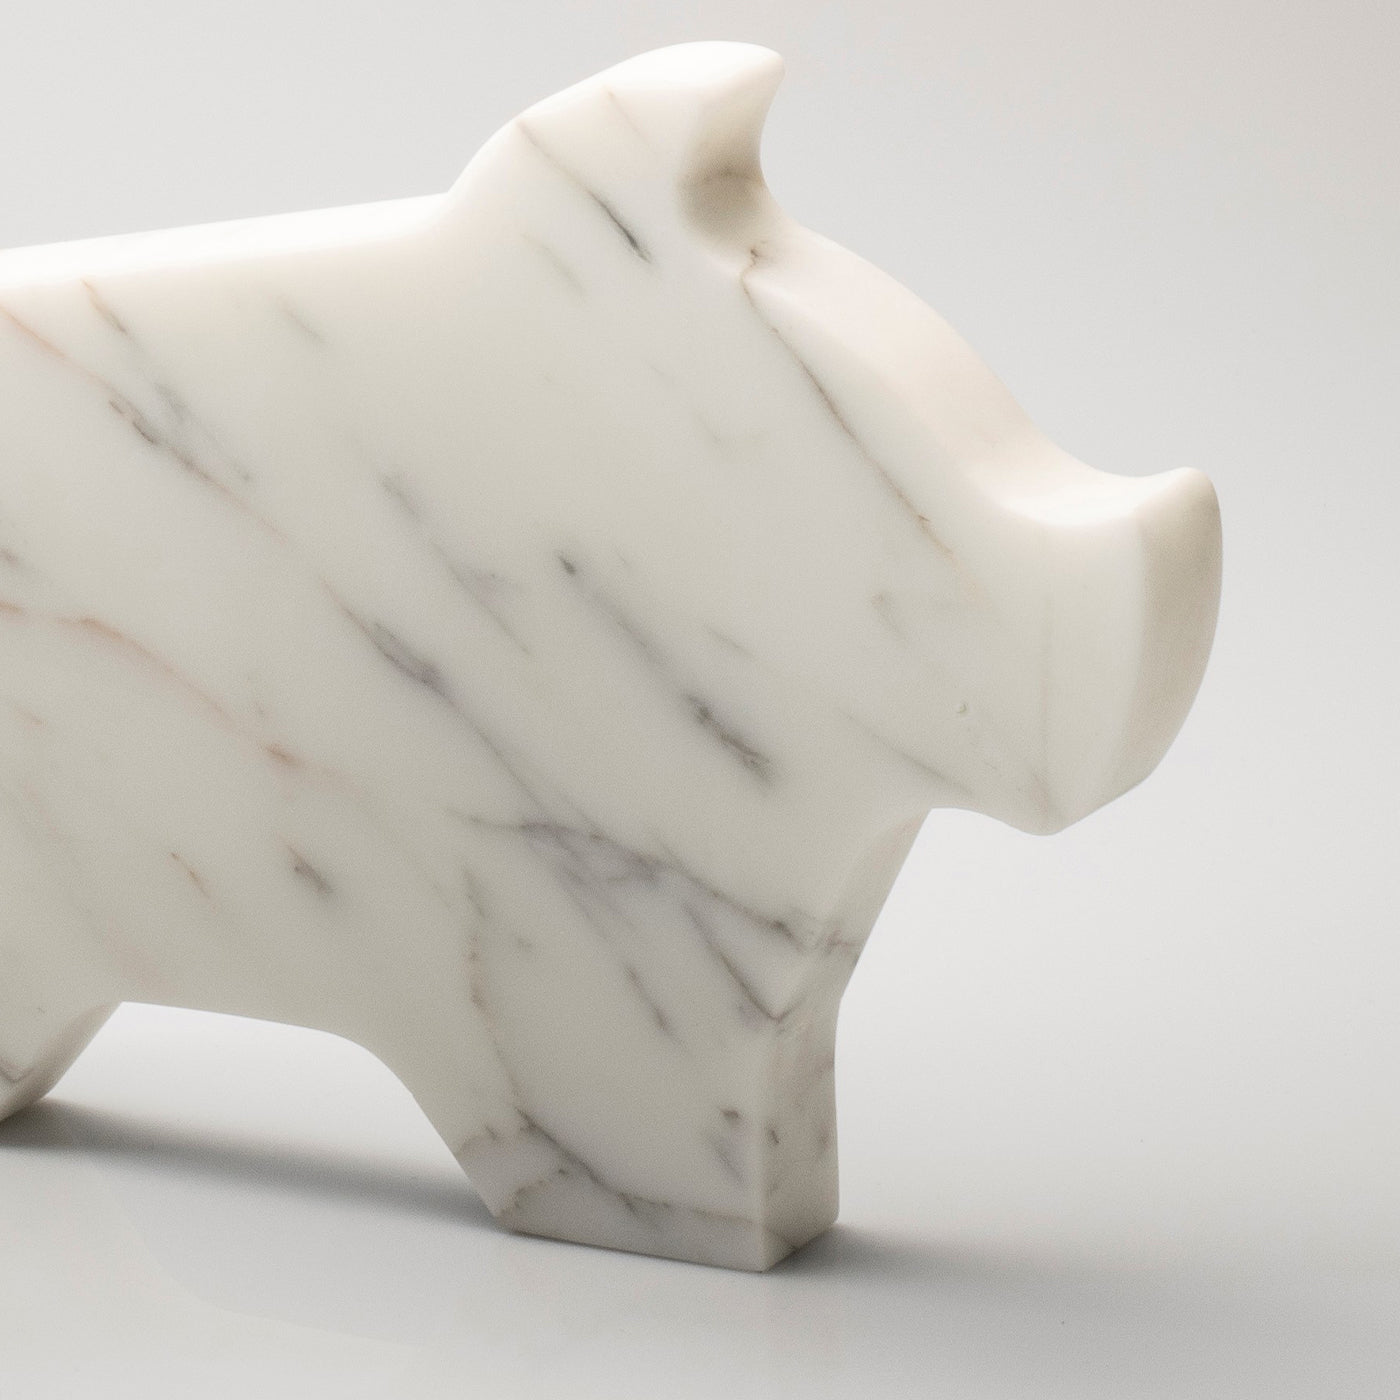 Grande statuetta di maiale bianco di Alessandra Grasso - Vista alternativa 1